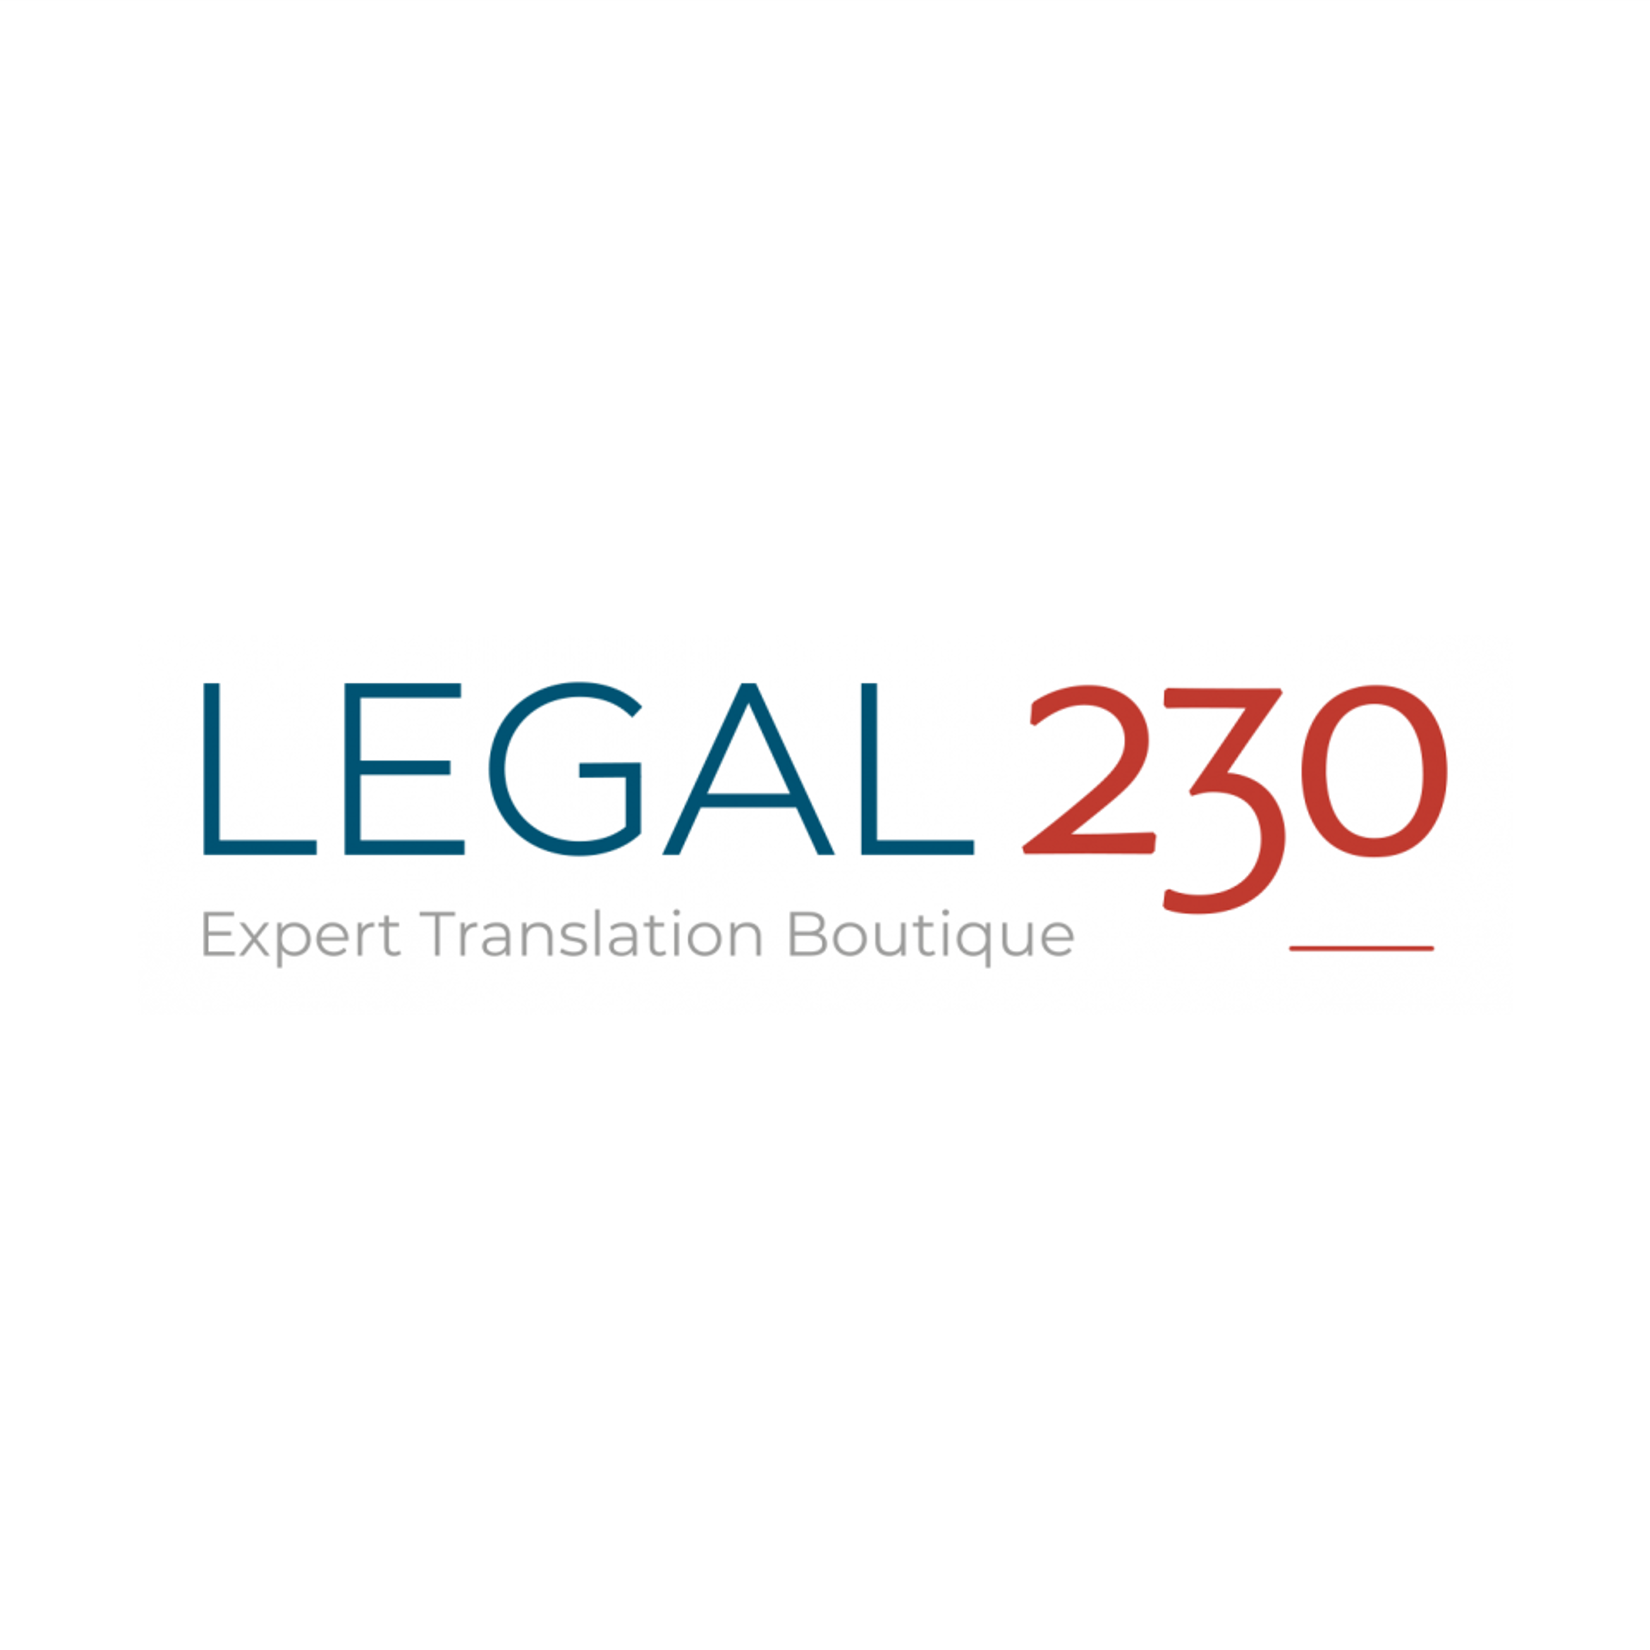 Legal 230